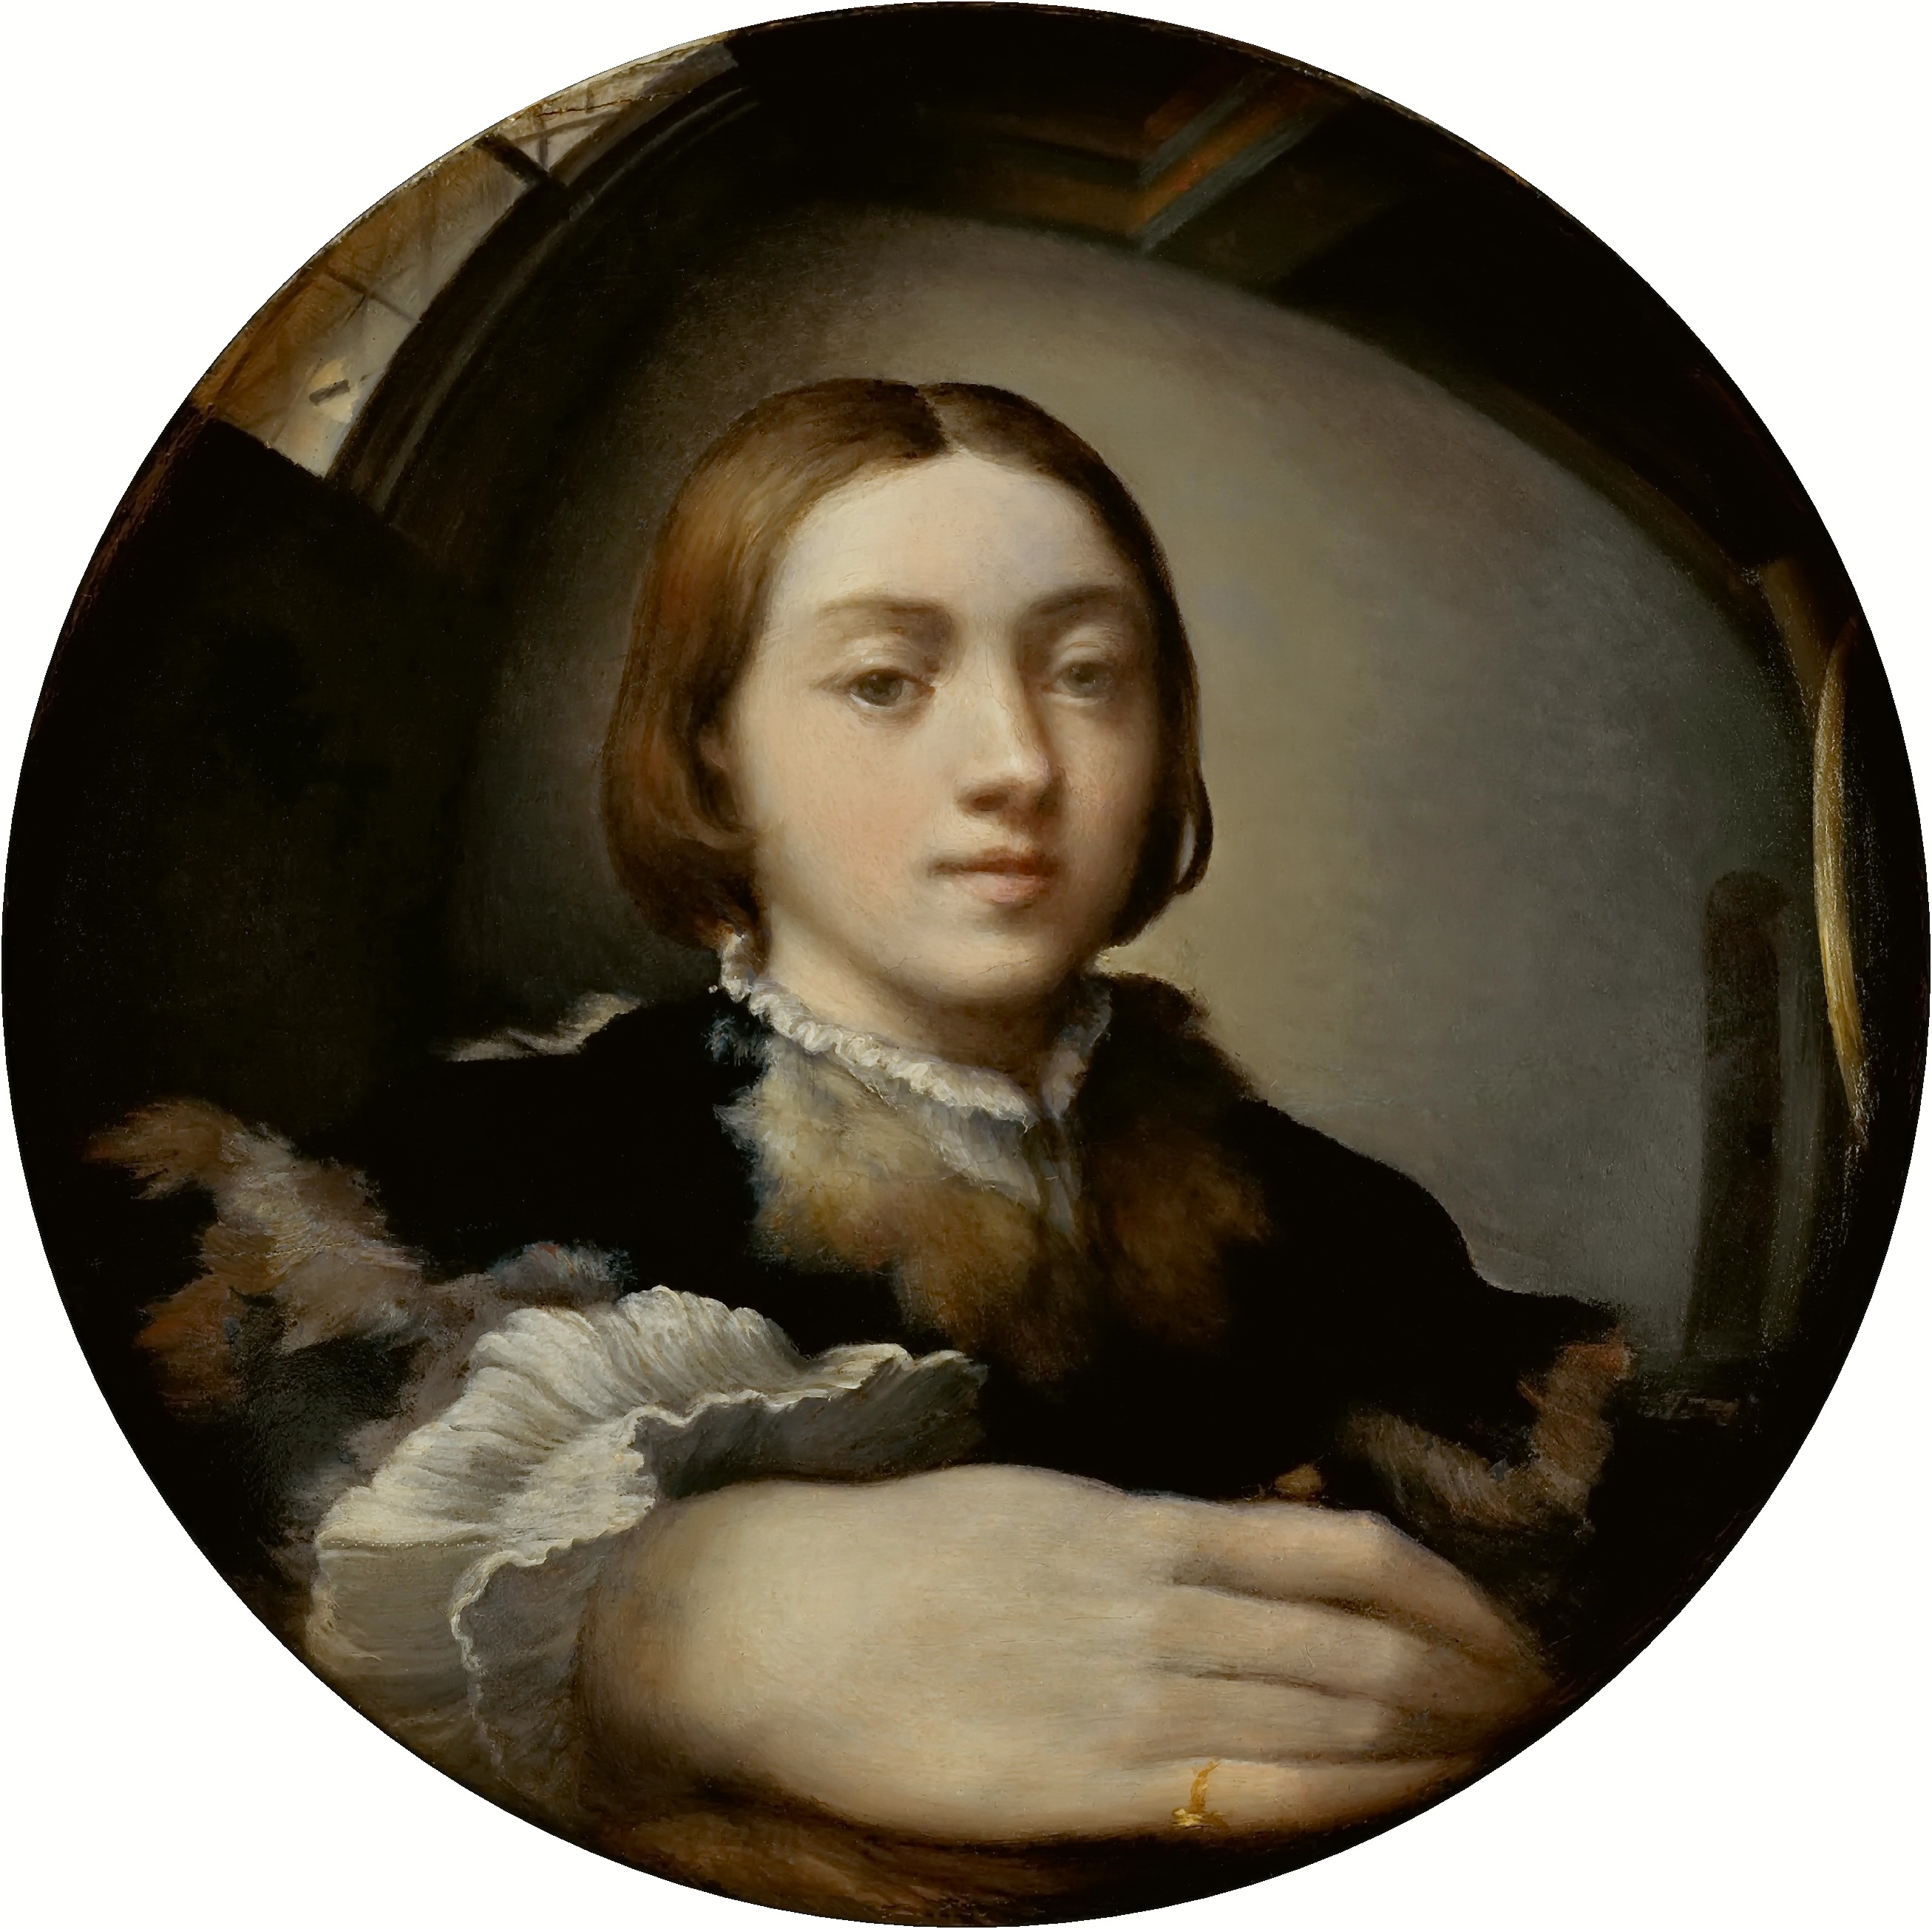 Parmigianino - January 11, 1503 - August 24, 1540